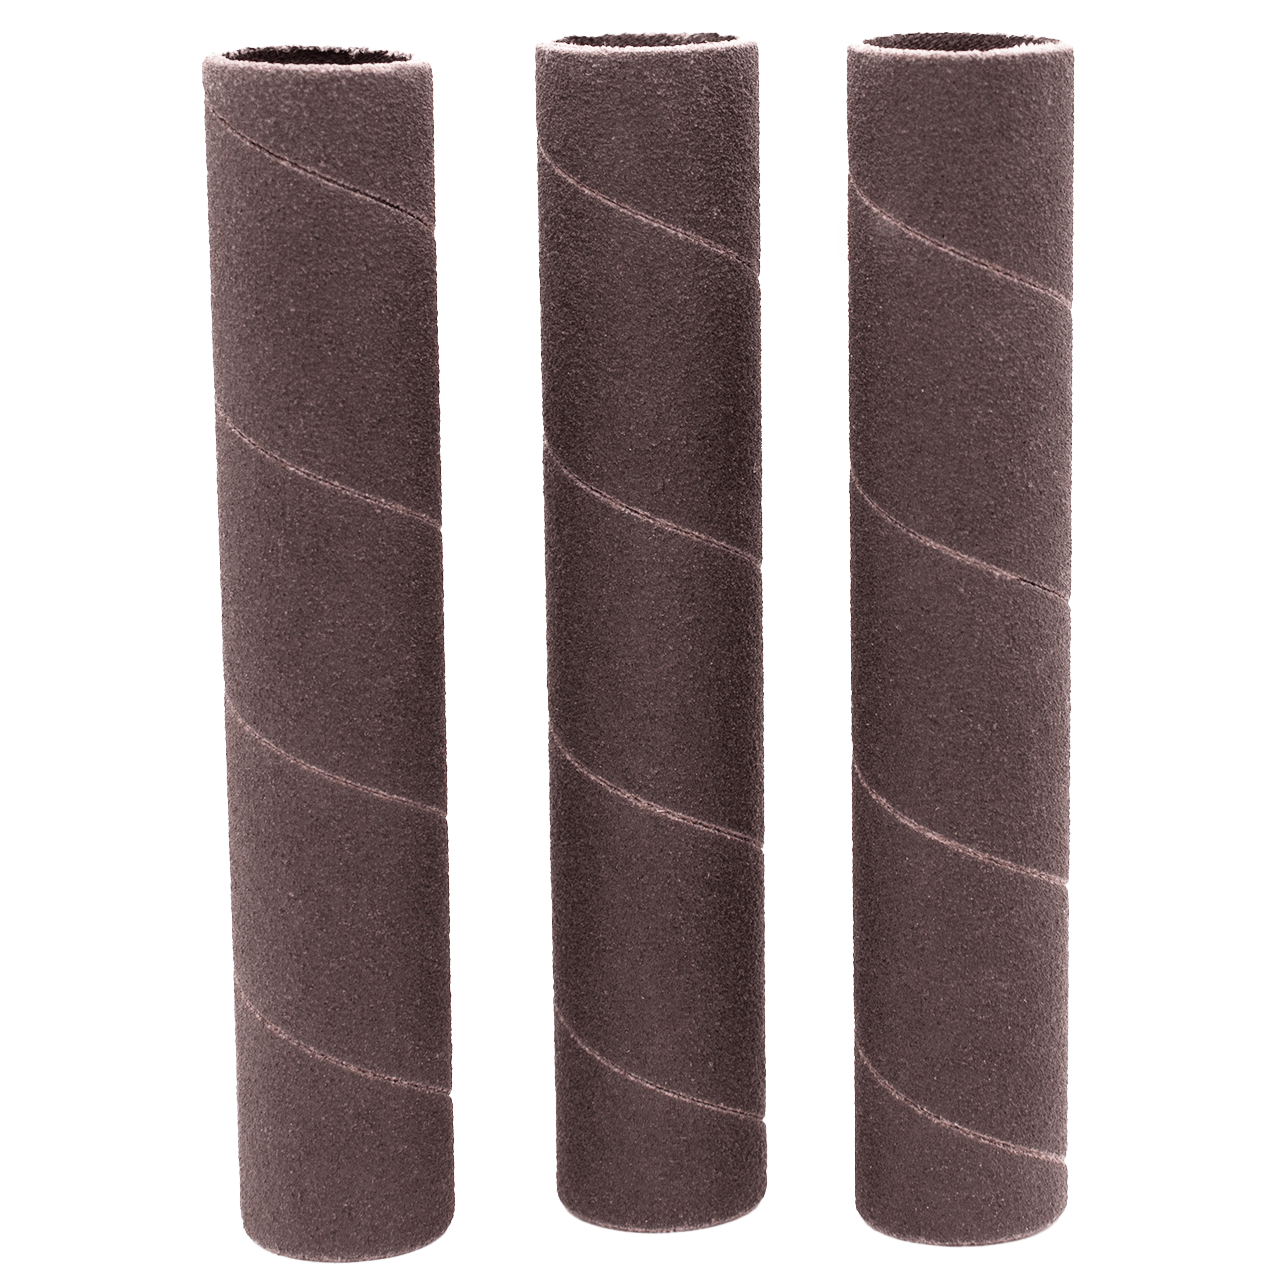 Klingspor Abrasives Aluminum Oxide Sanding Sleeves, 1/2inX 4-1/2in 150 Grit, 3pk